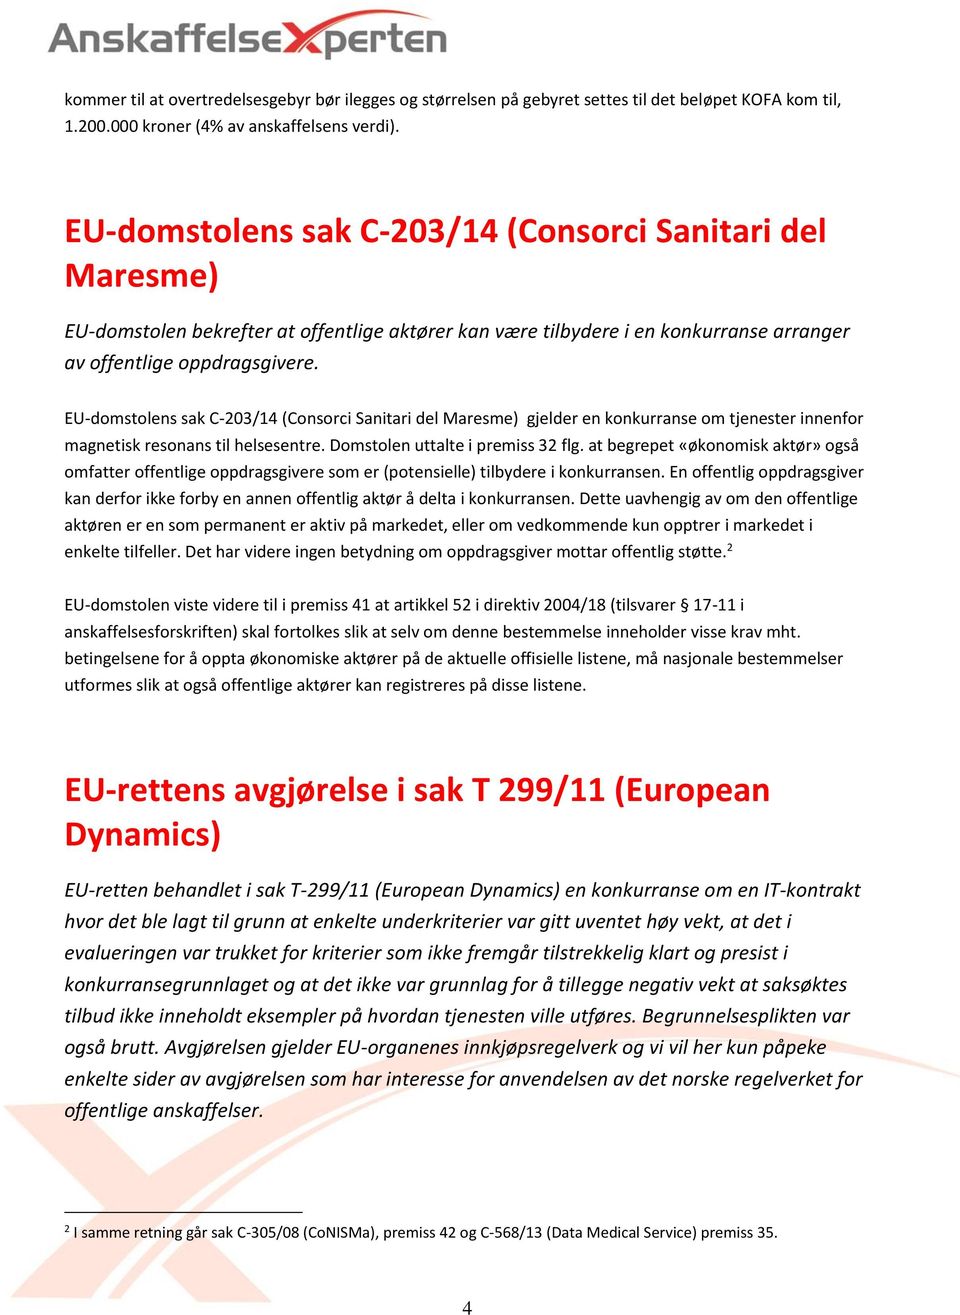 EU-domstolens sak C-203/14 (Consorci Sanitari del Maresme) gjelder en konkurranse om tjenester innenfor magnetisk resonans til helsesentre. Domstolen uttalte i premiss 32 flg.